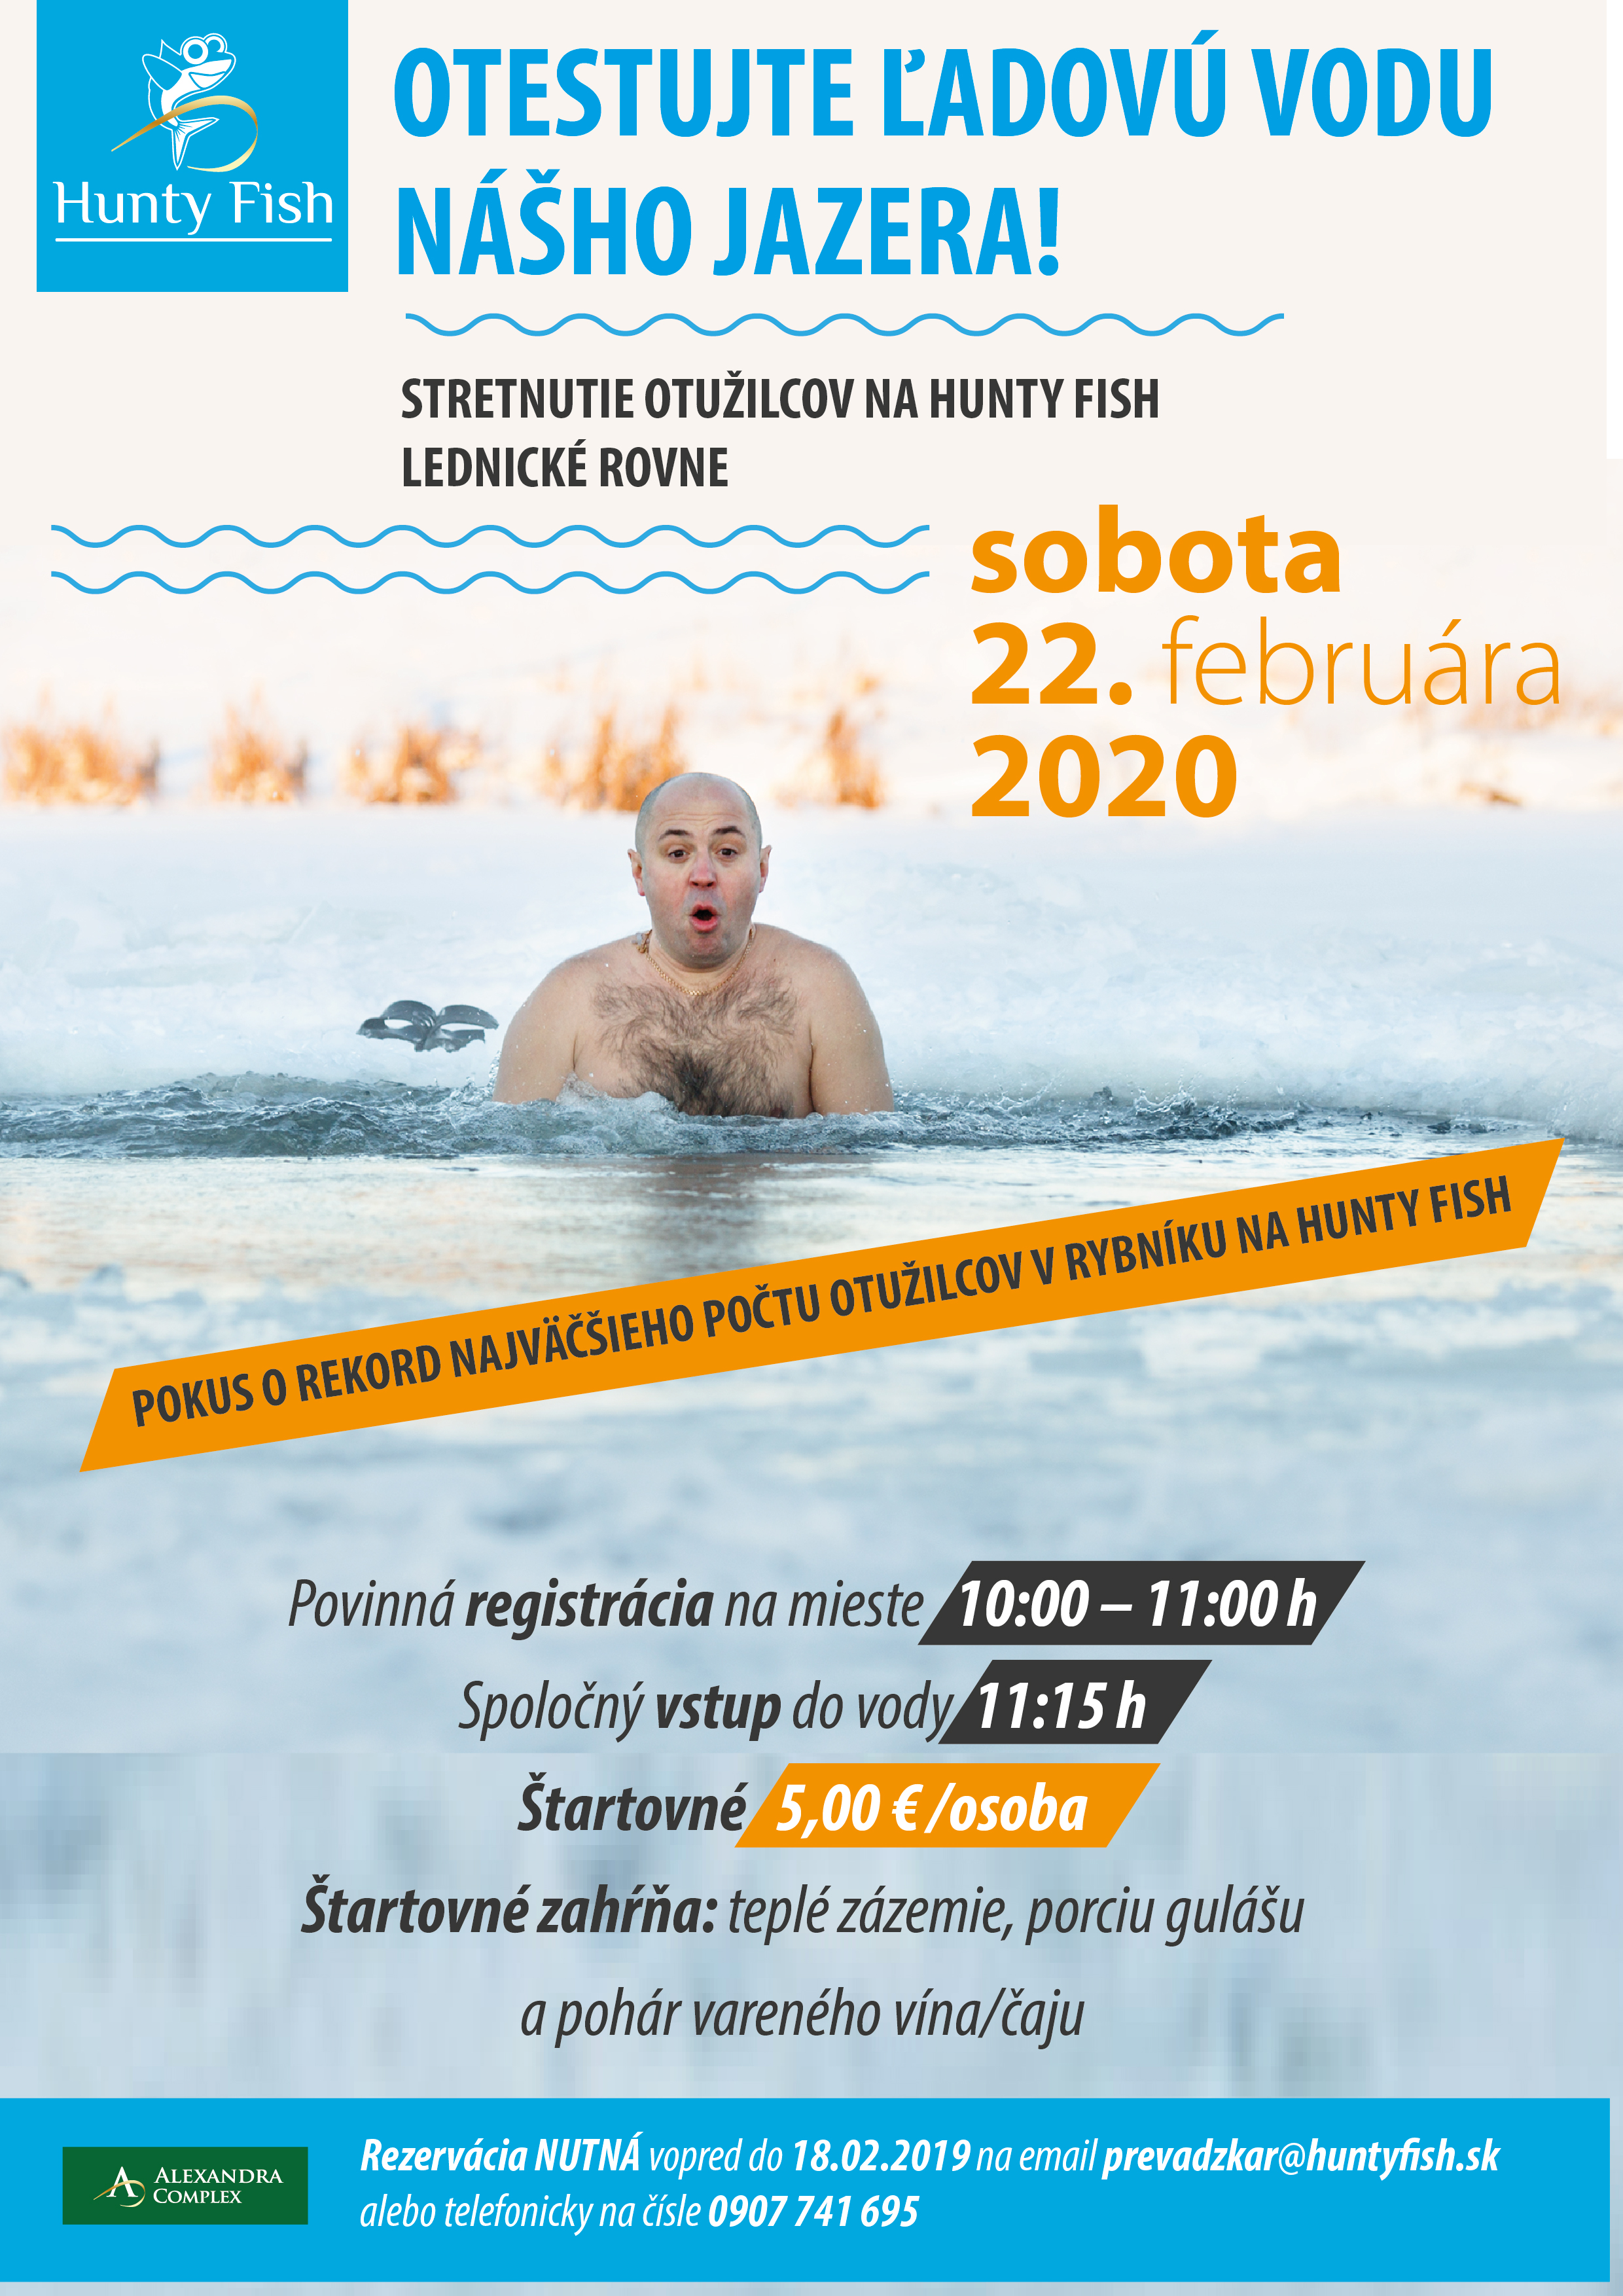 Stretnutie otužilcov na jazere v Lednických Rovniach - pokus o slovenský rekord